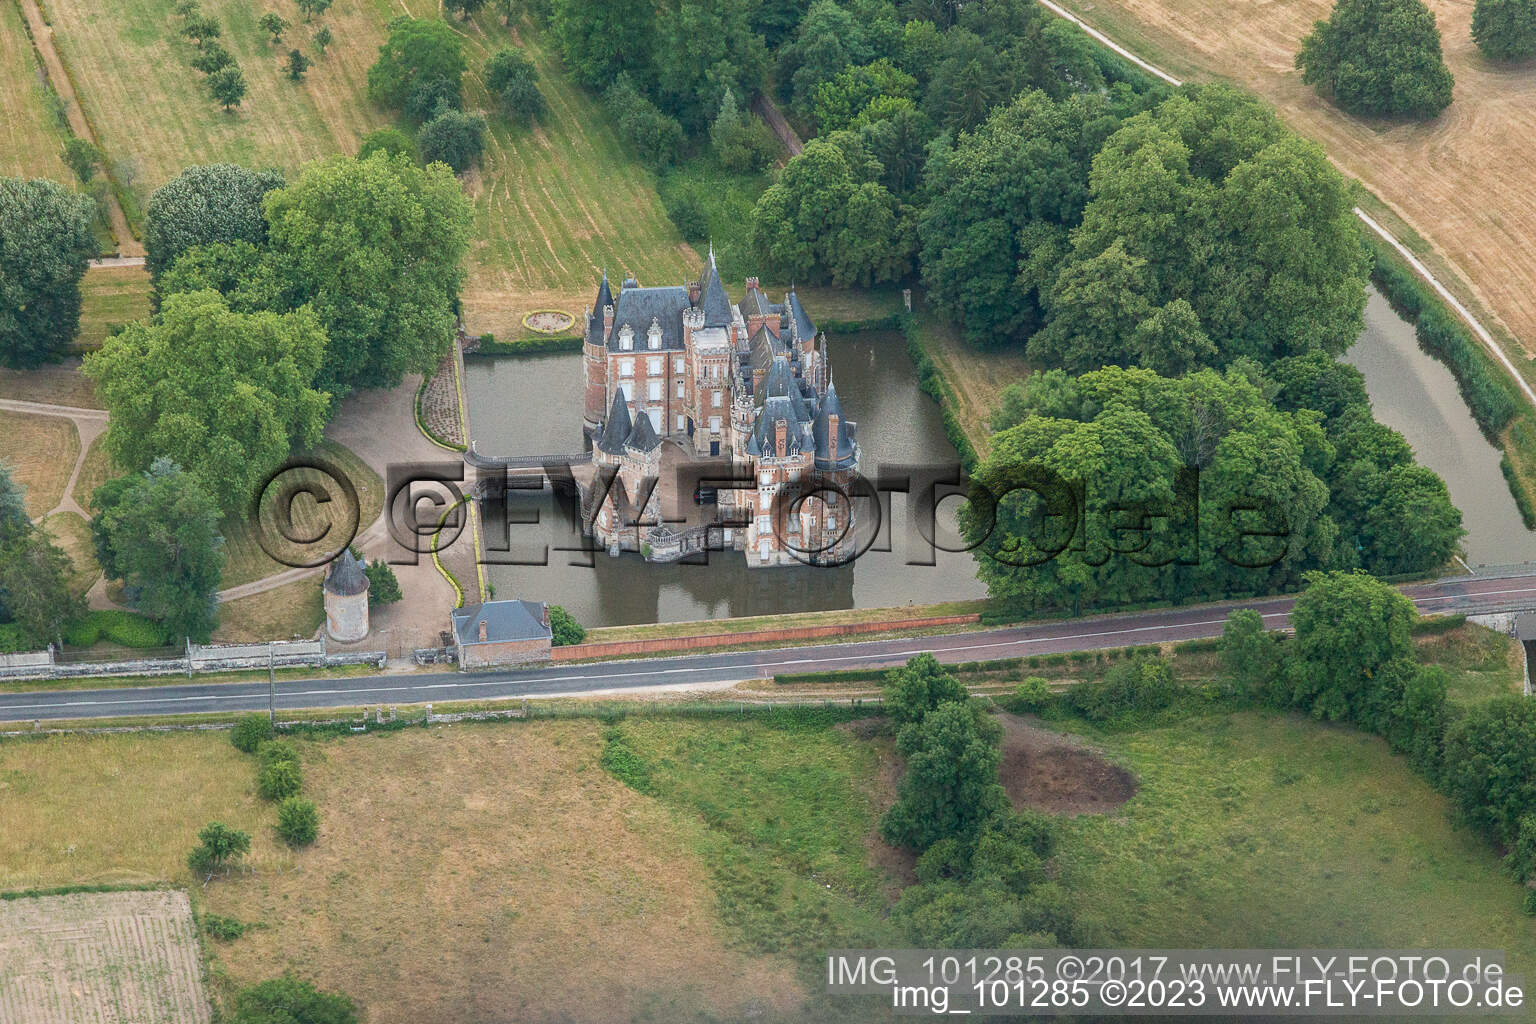 Bâtiments et installations du parc du château du château à douves Château de Combreux à Combreux dans le département Loiret, France vue d'en haut